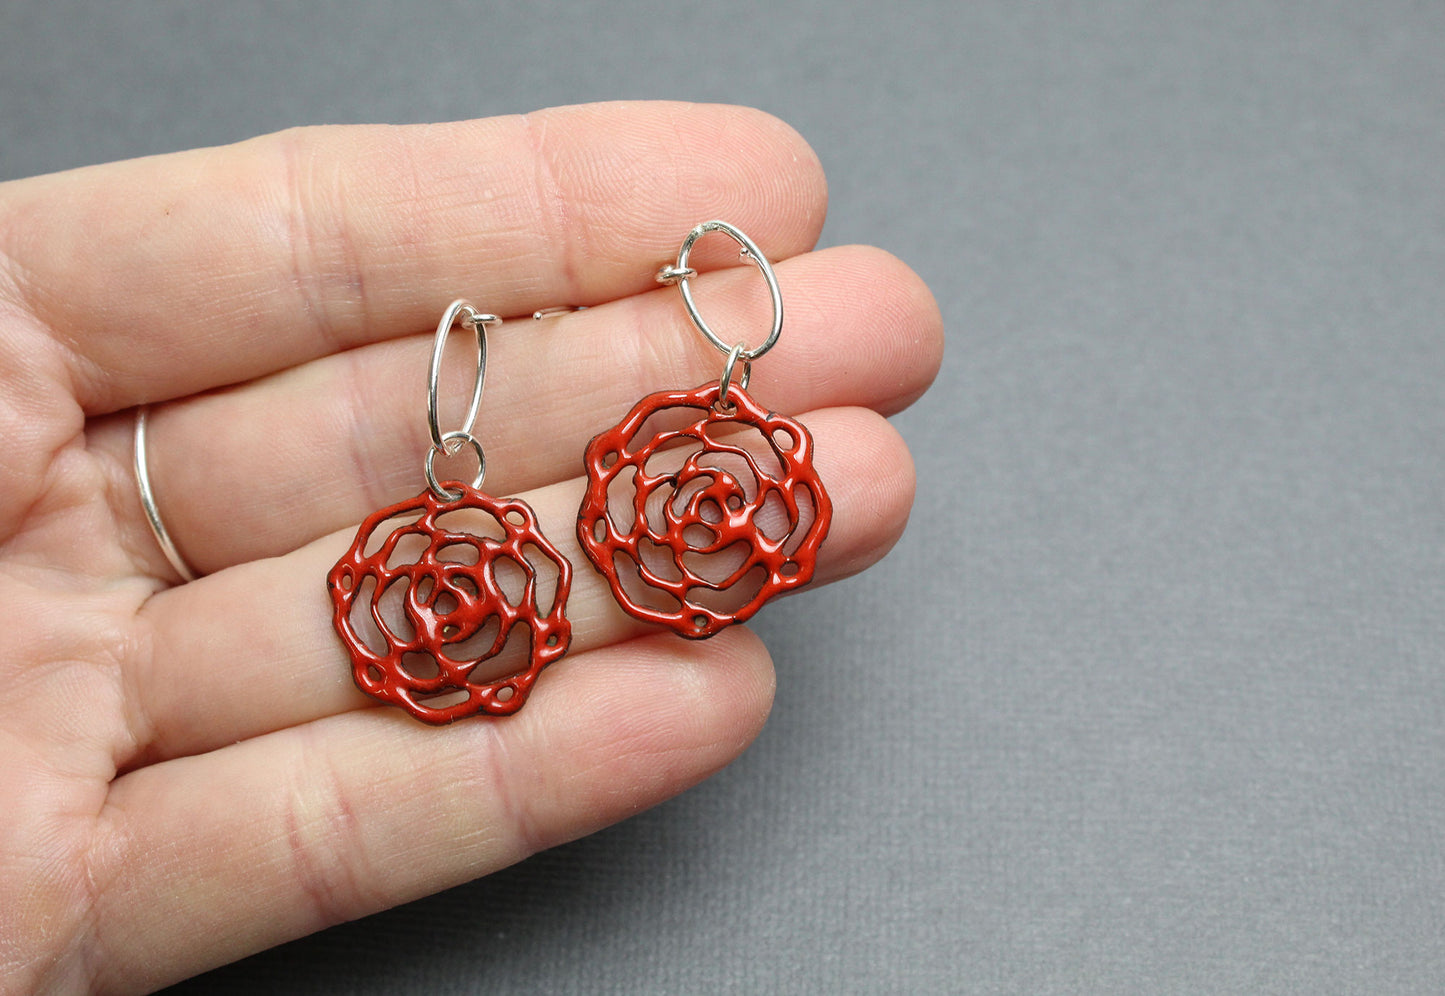 Red Enamel Flower Earrings With Sterling Silver Ear Wires